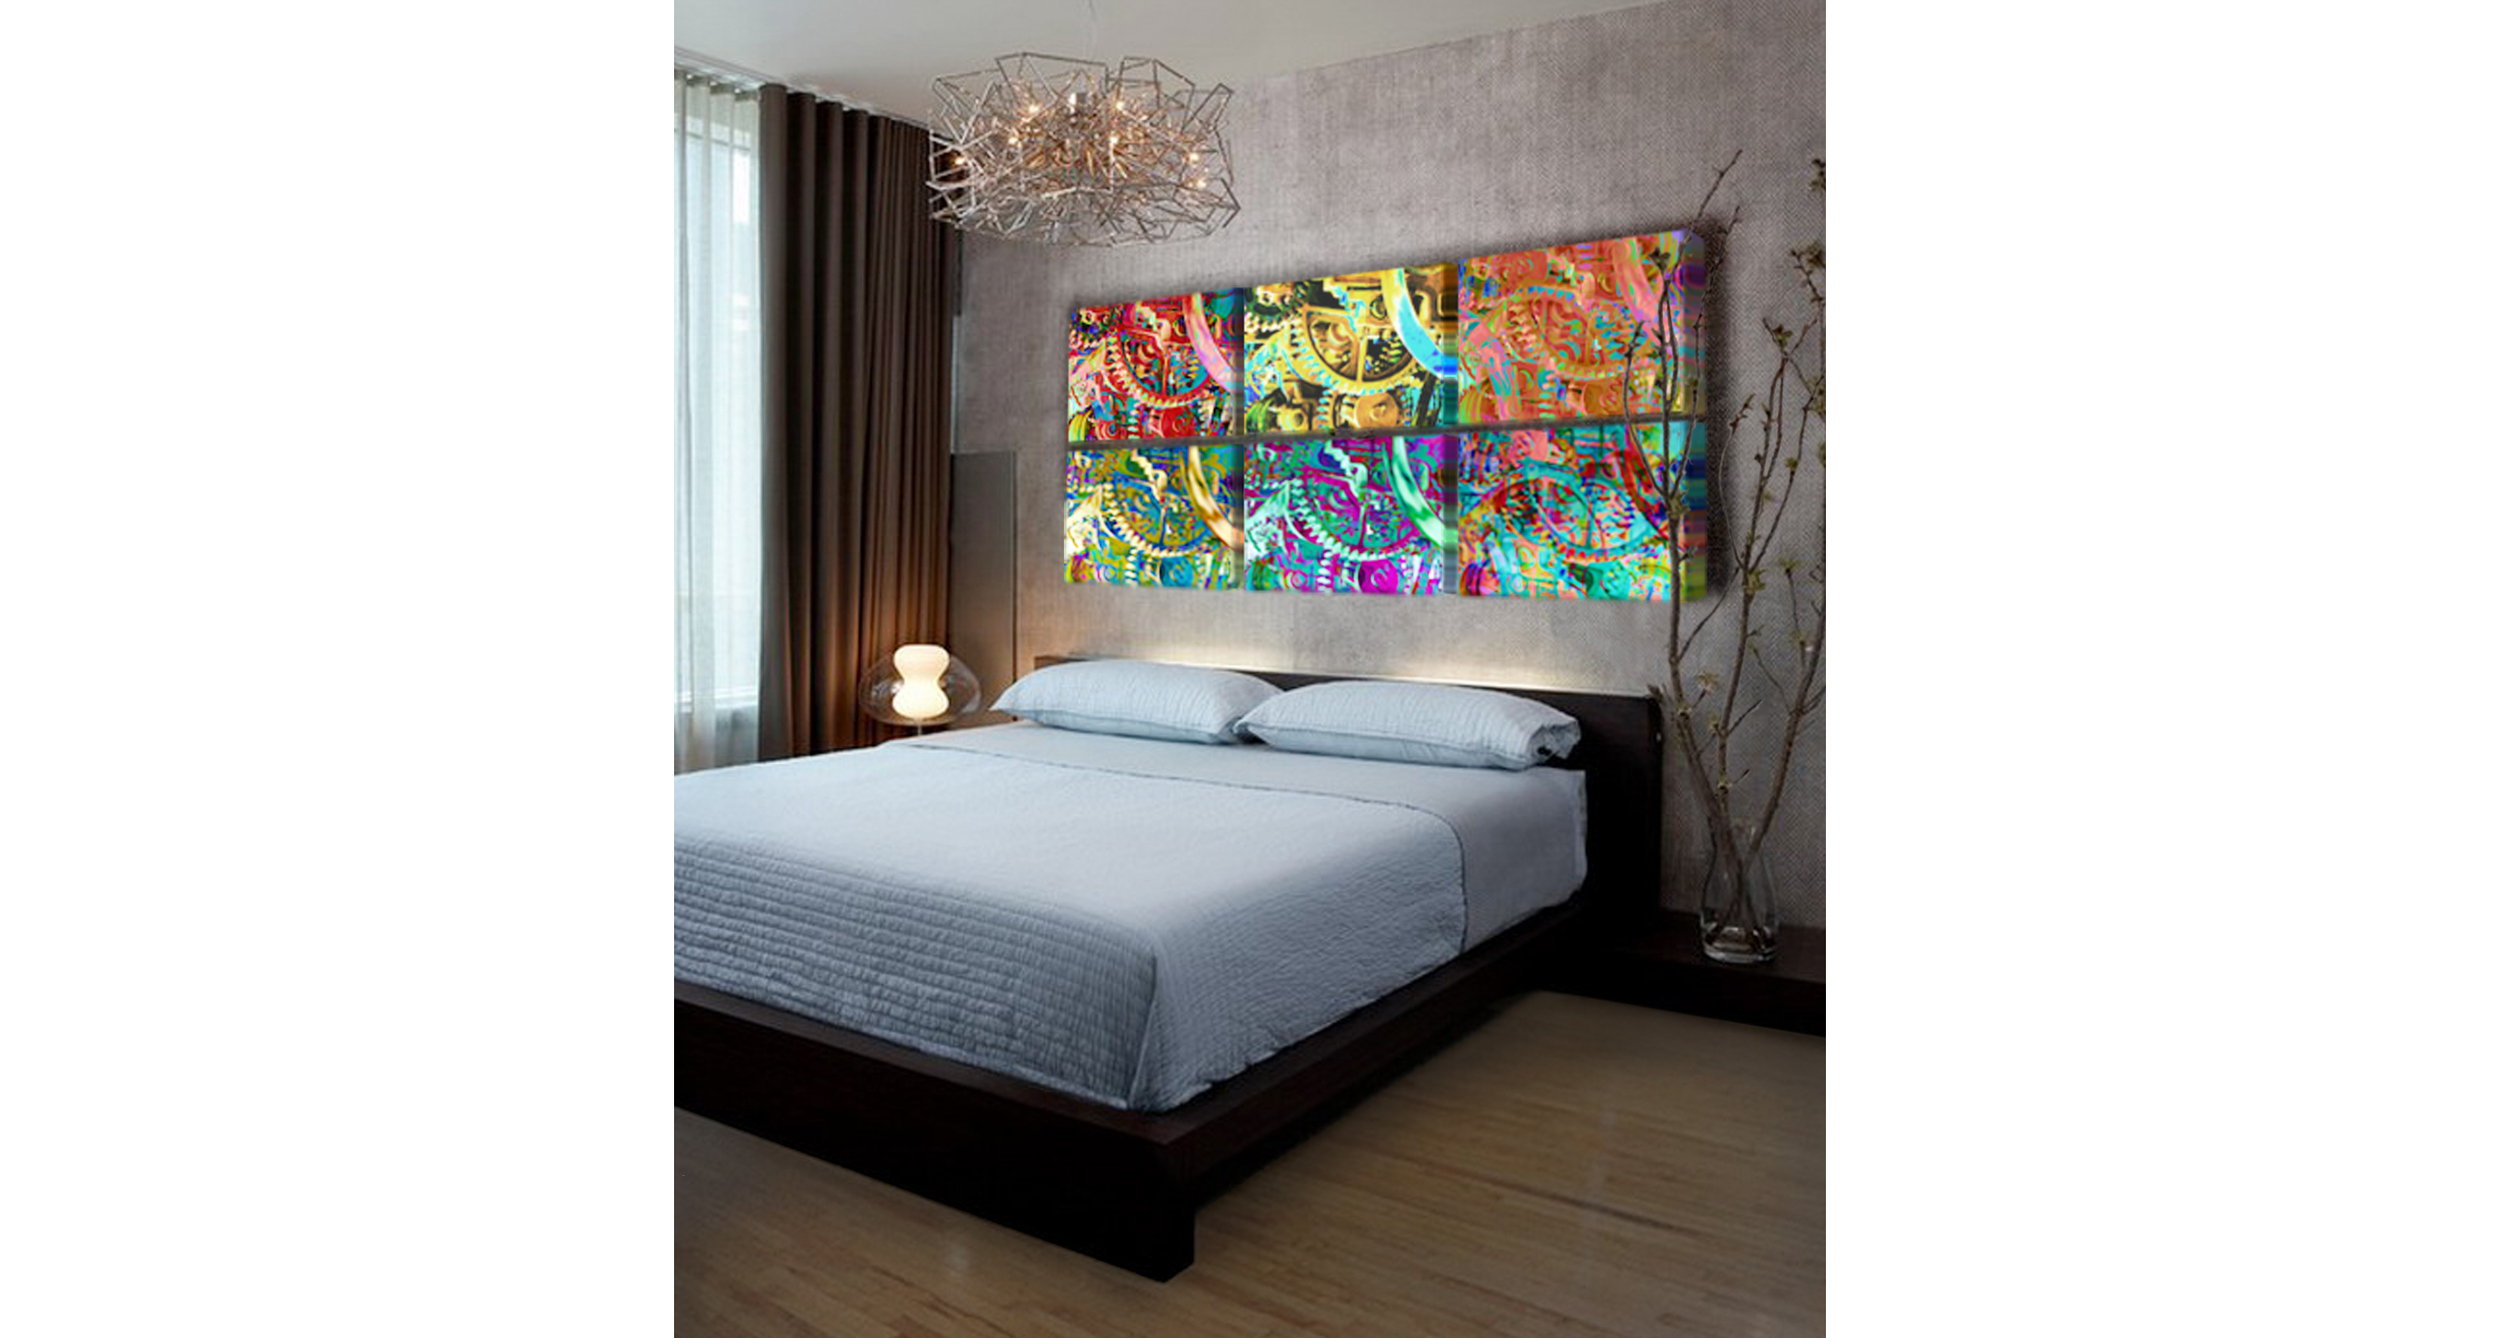 gear_paintings_in_modern_bedroom_b_wide_format.jpg